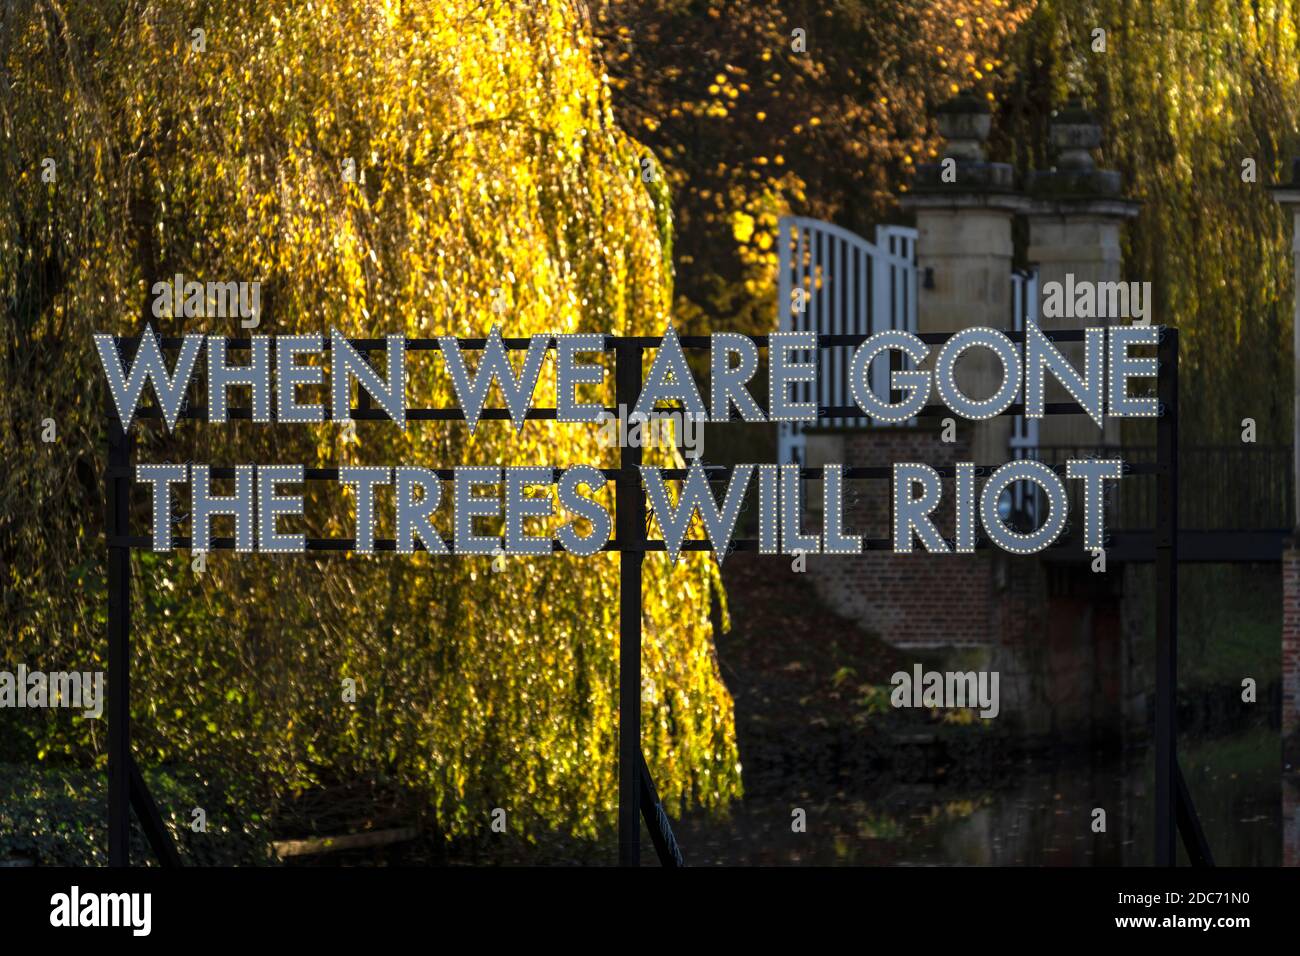 When We Are Gone The Trees Will Riot, Lichtinstallation des Künstlers Robert Montgomery im Park der Burg Hülshoff, Havixbeck, Münsterland, Nordrhein-W Stock Photo